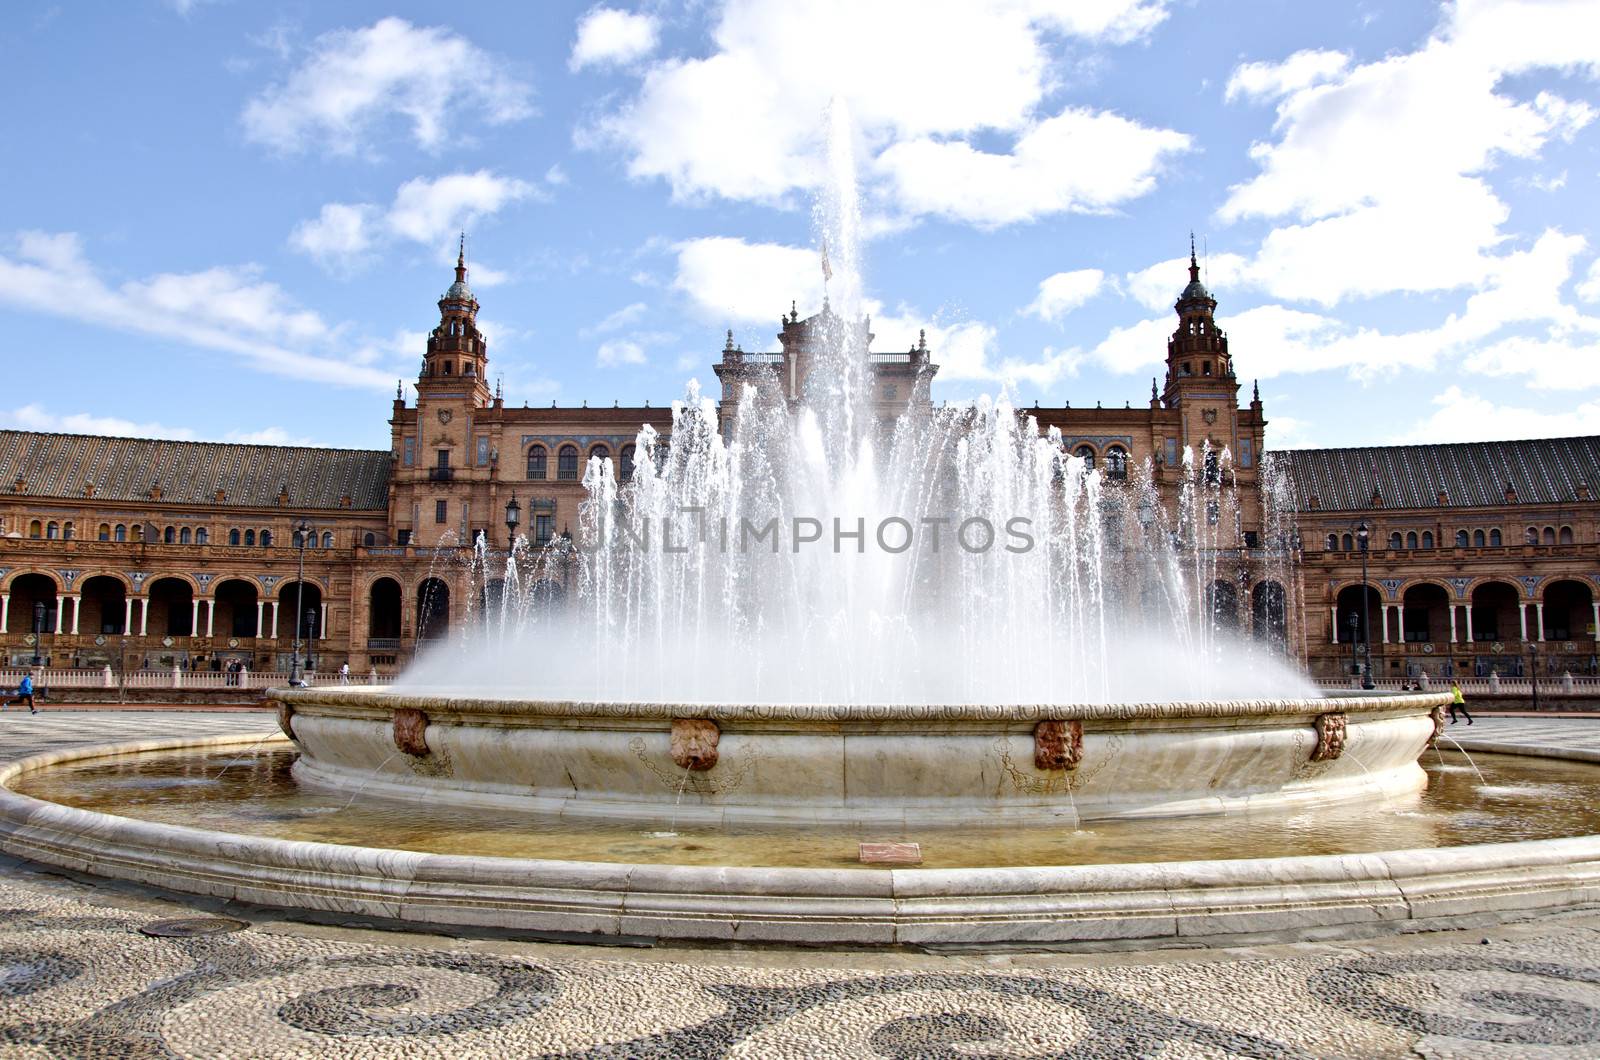 Plaza of Spain, Seville